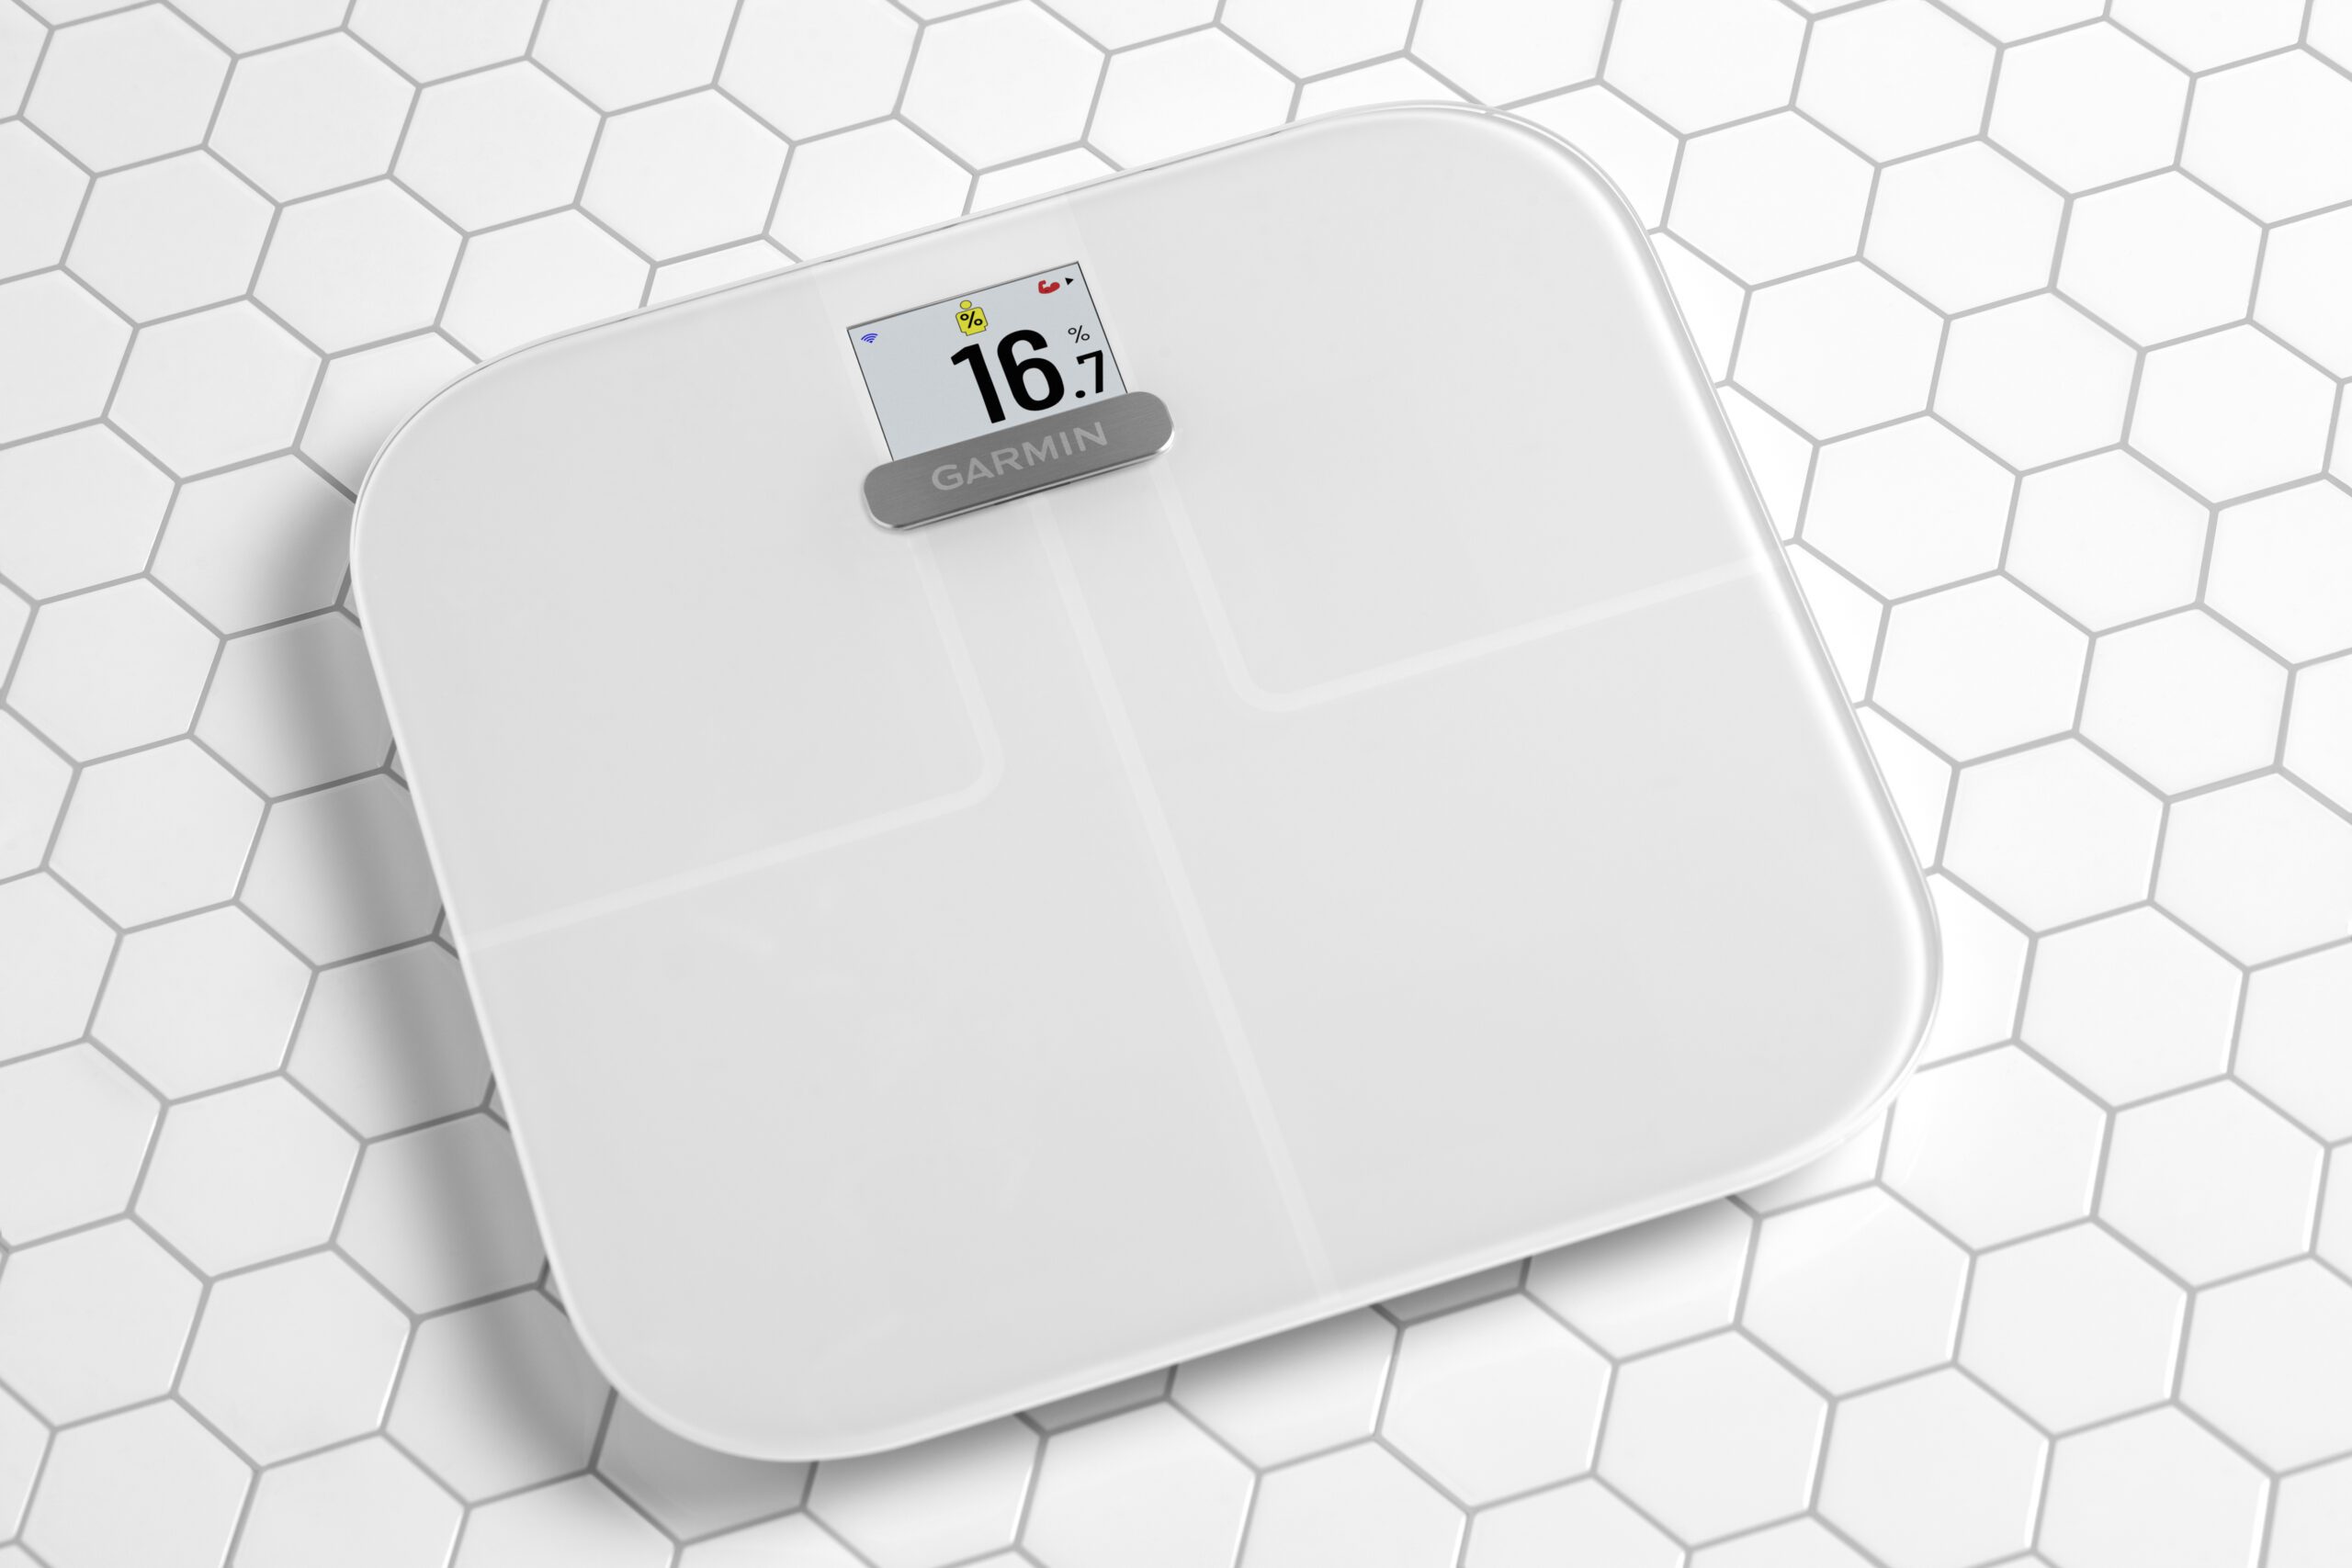 Mät mer än bara vikt med Index S2 smart scale från Garmin